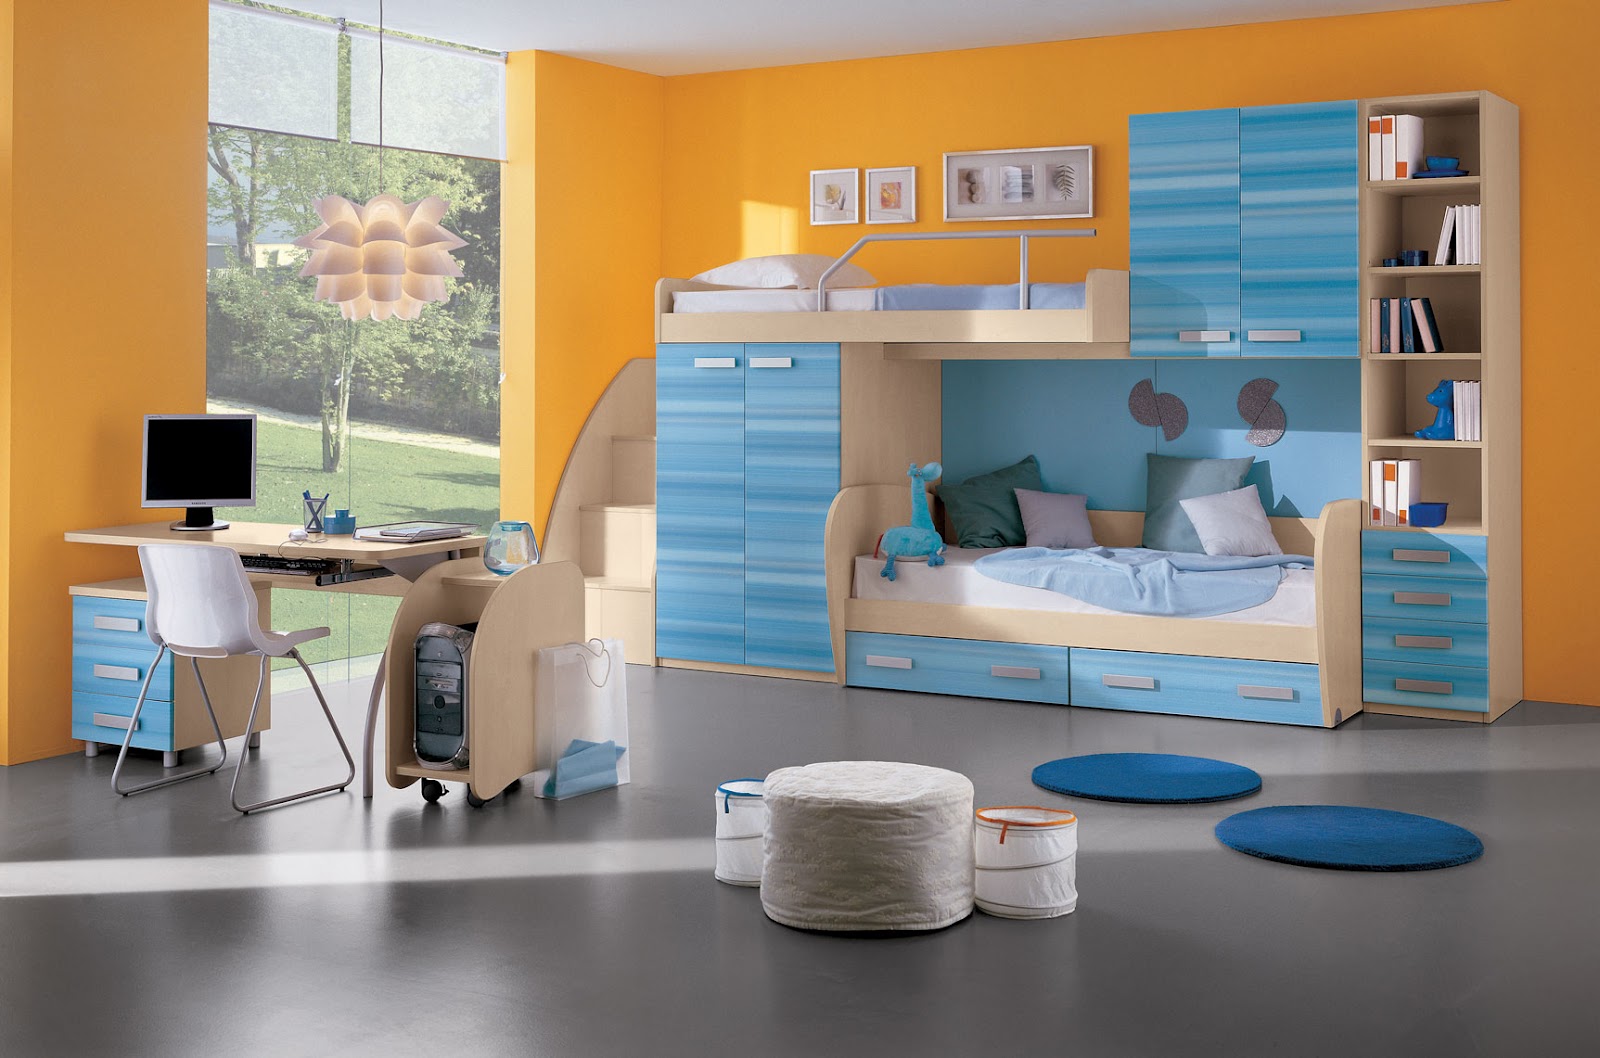 http://1.bp.blogspot.com/-rNax8Be5xKw/UDySon6TnhI/AAAAAAAACh0/4zyj1xvZscg/s1600/Kids-Room-Best-Home-Interior-Designs.jpg